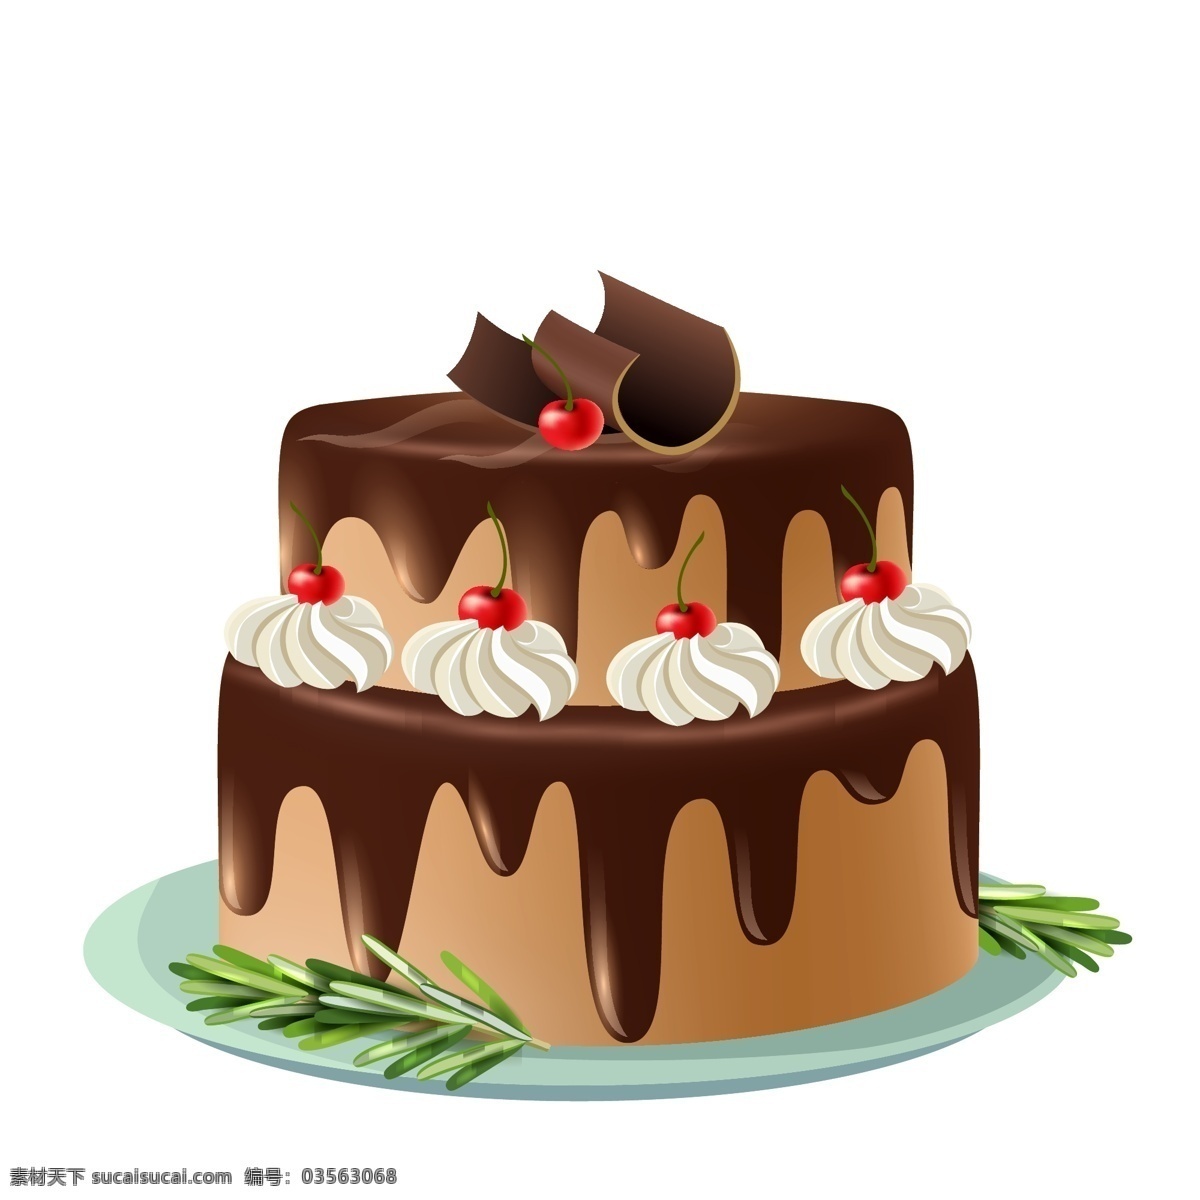 矢量蛋糕图片 西式面包 西式糕点 矢量美食 蛋糕店图片 奶油蛋糕 蛋糕 生日蛋糕 糕点 烘培 蛋糕店促销 蛋糕店 蛋糕制作 蛋糕房 蛋糕订做 蛋糕西式 蛋糕糕点 蛋糕牛奶 蛋糕营养 蛋糕素材 蛋糕灯箱 蛋糕工房 蛋糕包装 蛋糕图片 蛋糕超市 情人节素材 浪漫 爱 生日卡 草梅蛋糕图片